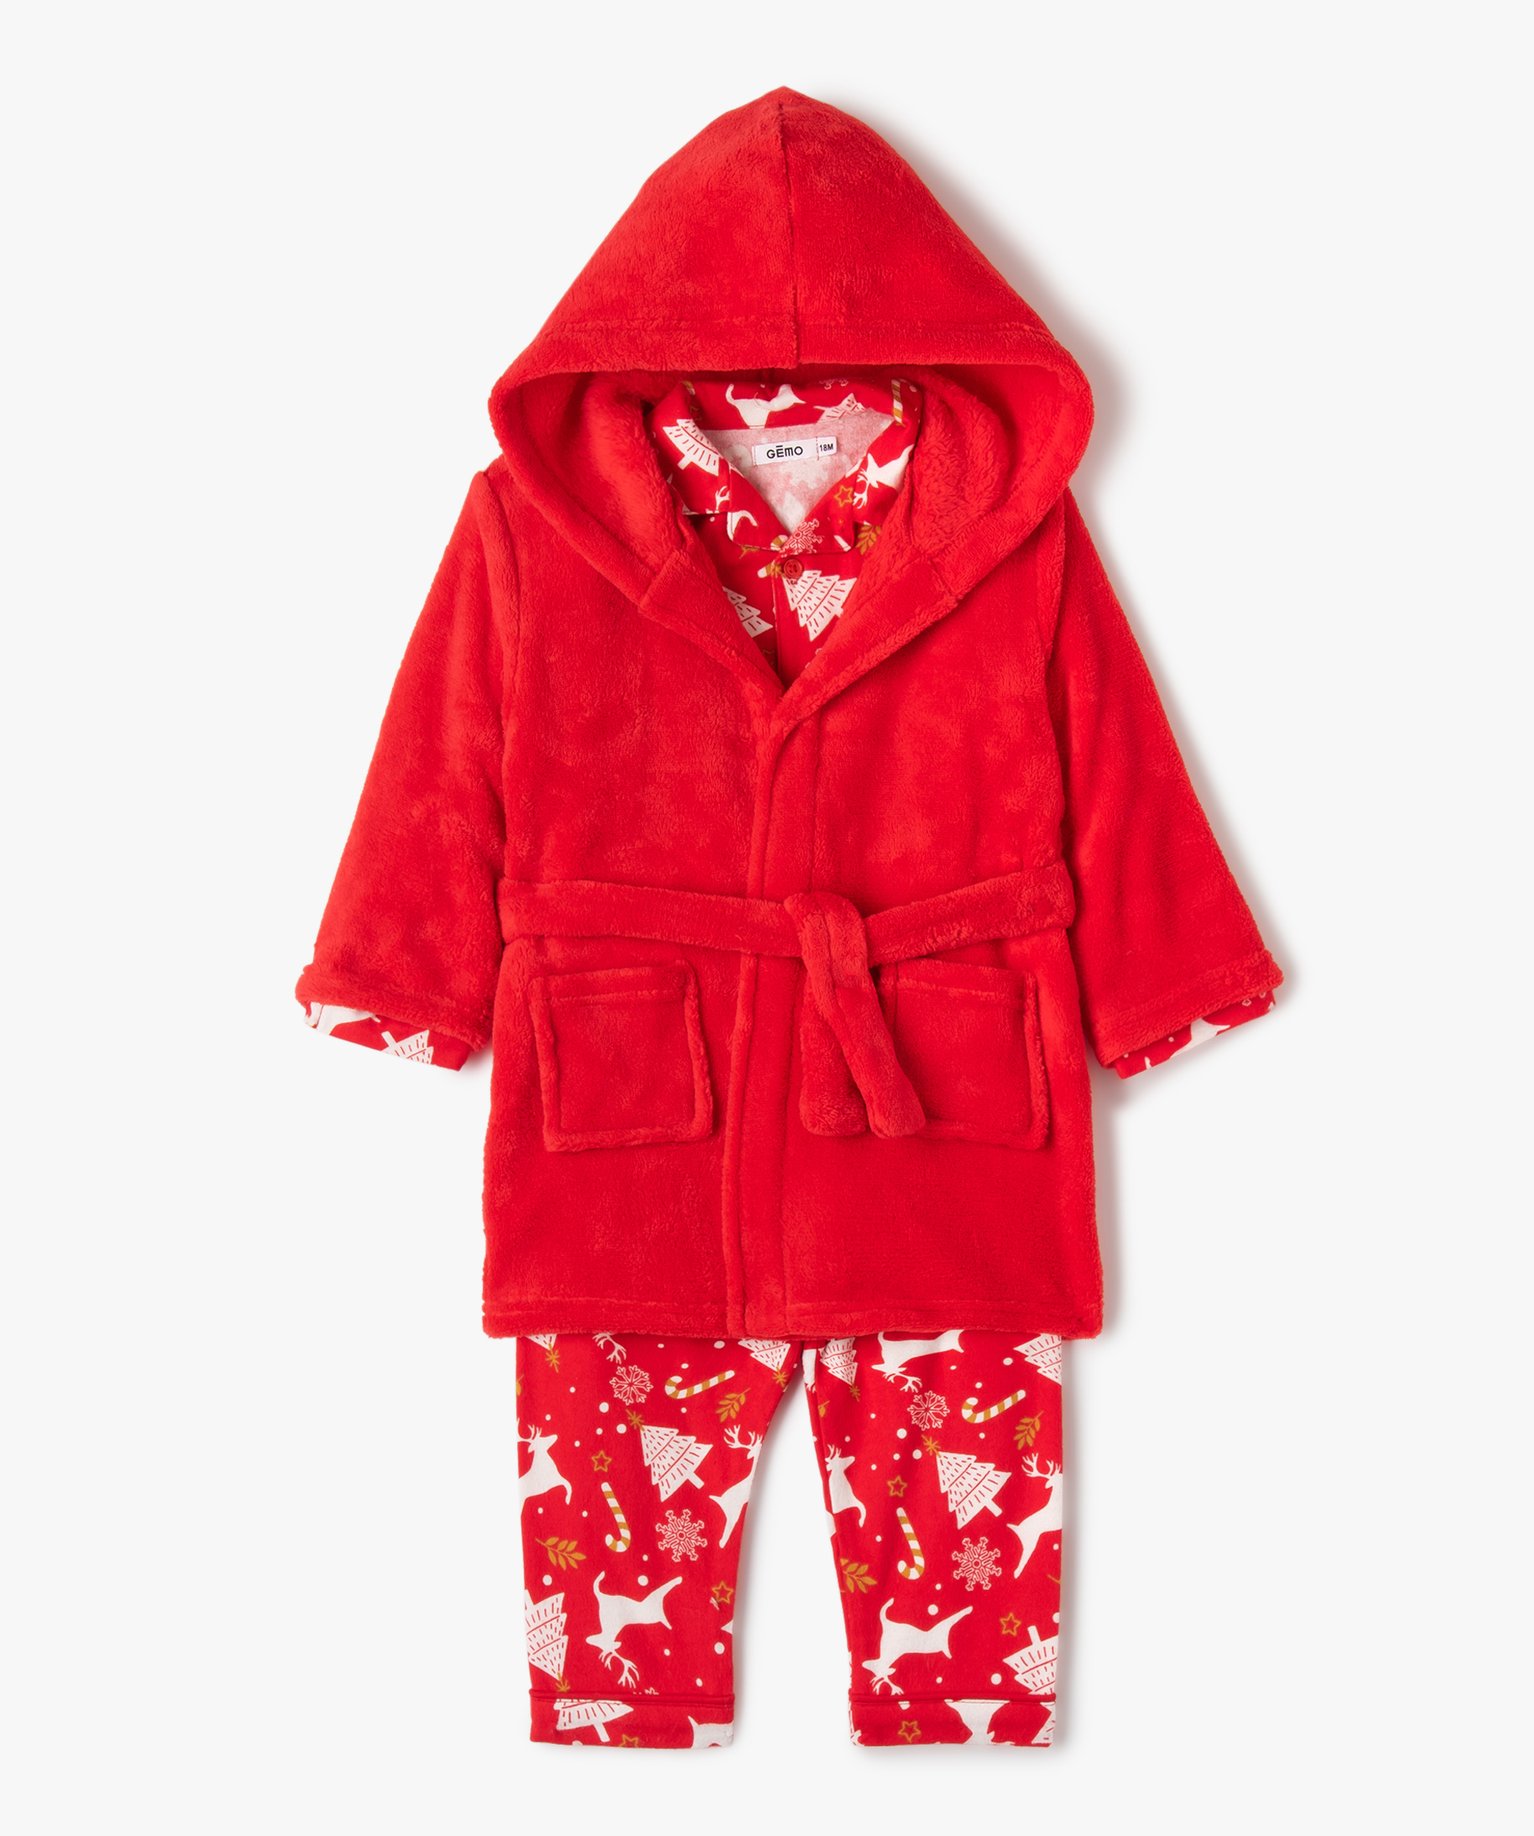 Ensemble pyjama bébé spécial Noël (3 pièces) - 12M - rouge - GEMO